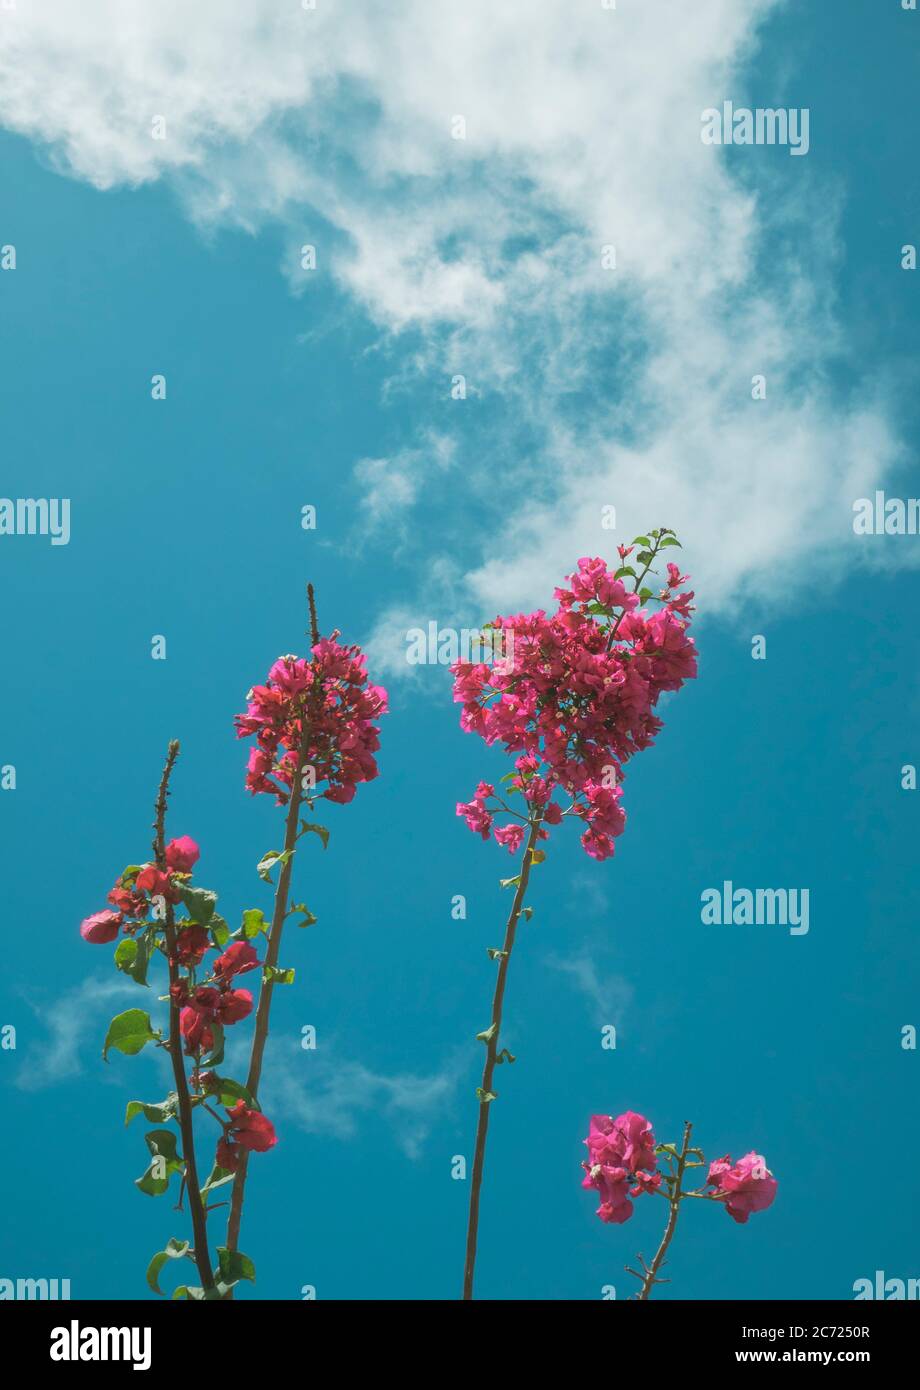 Fiori rosa su gambo di pianta contro un cielo blu desaturato Foto Stock